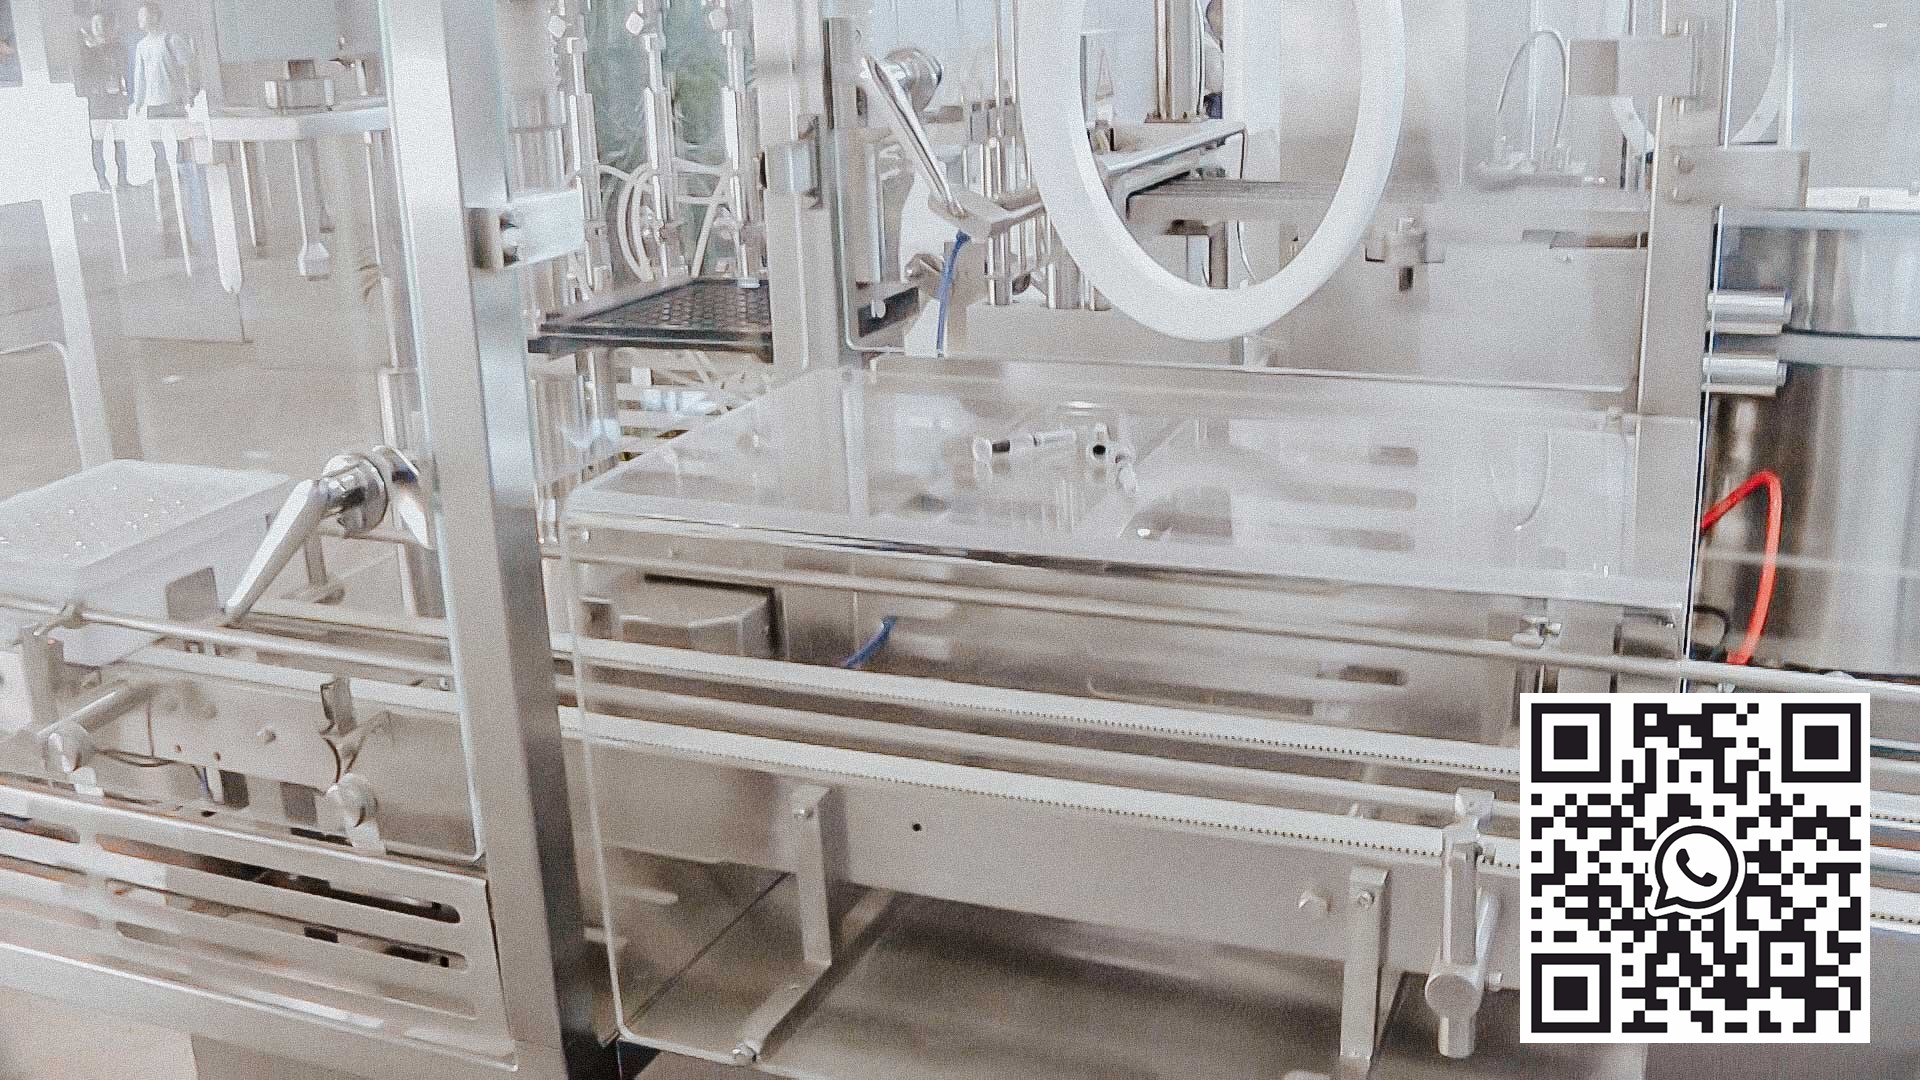 Automatická sterilizační pračka pro plnění a uzavírání skleněných lahví